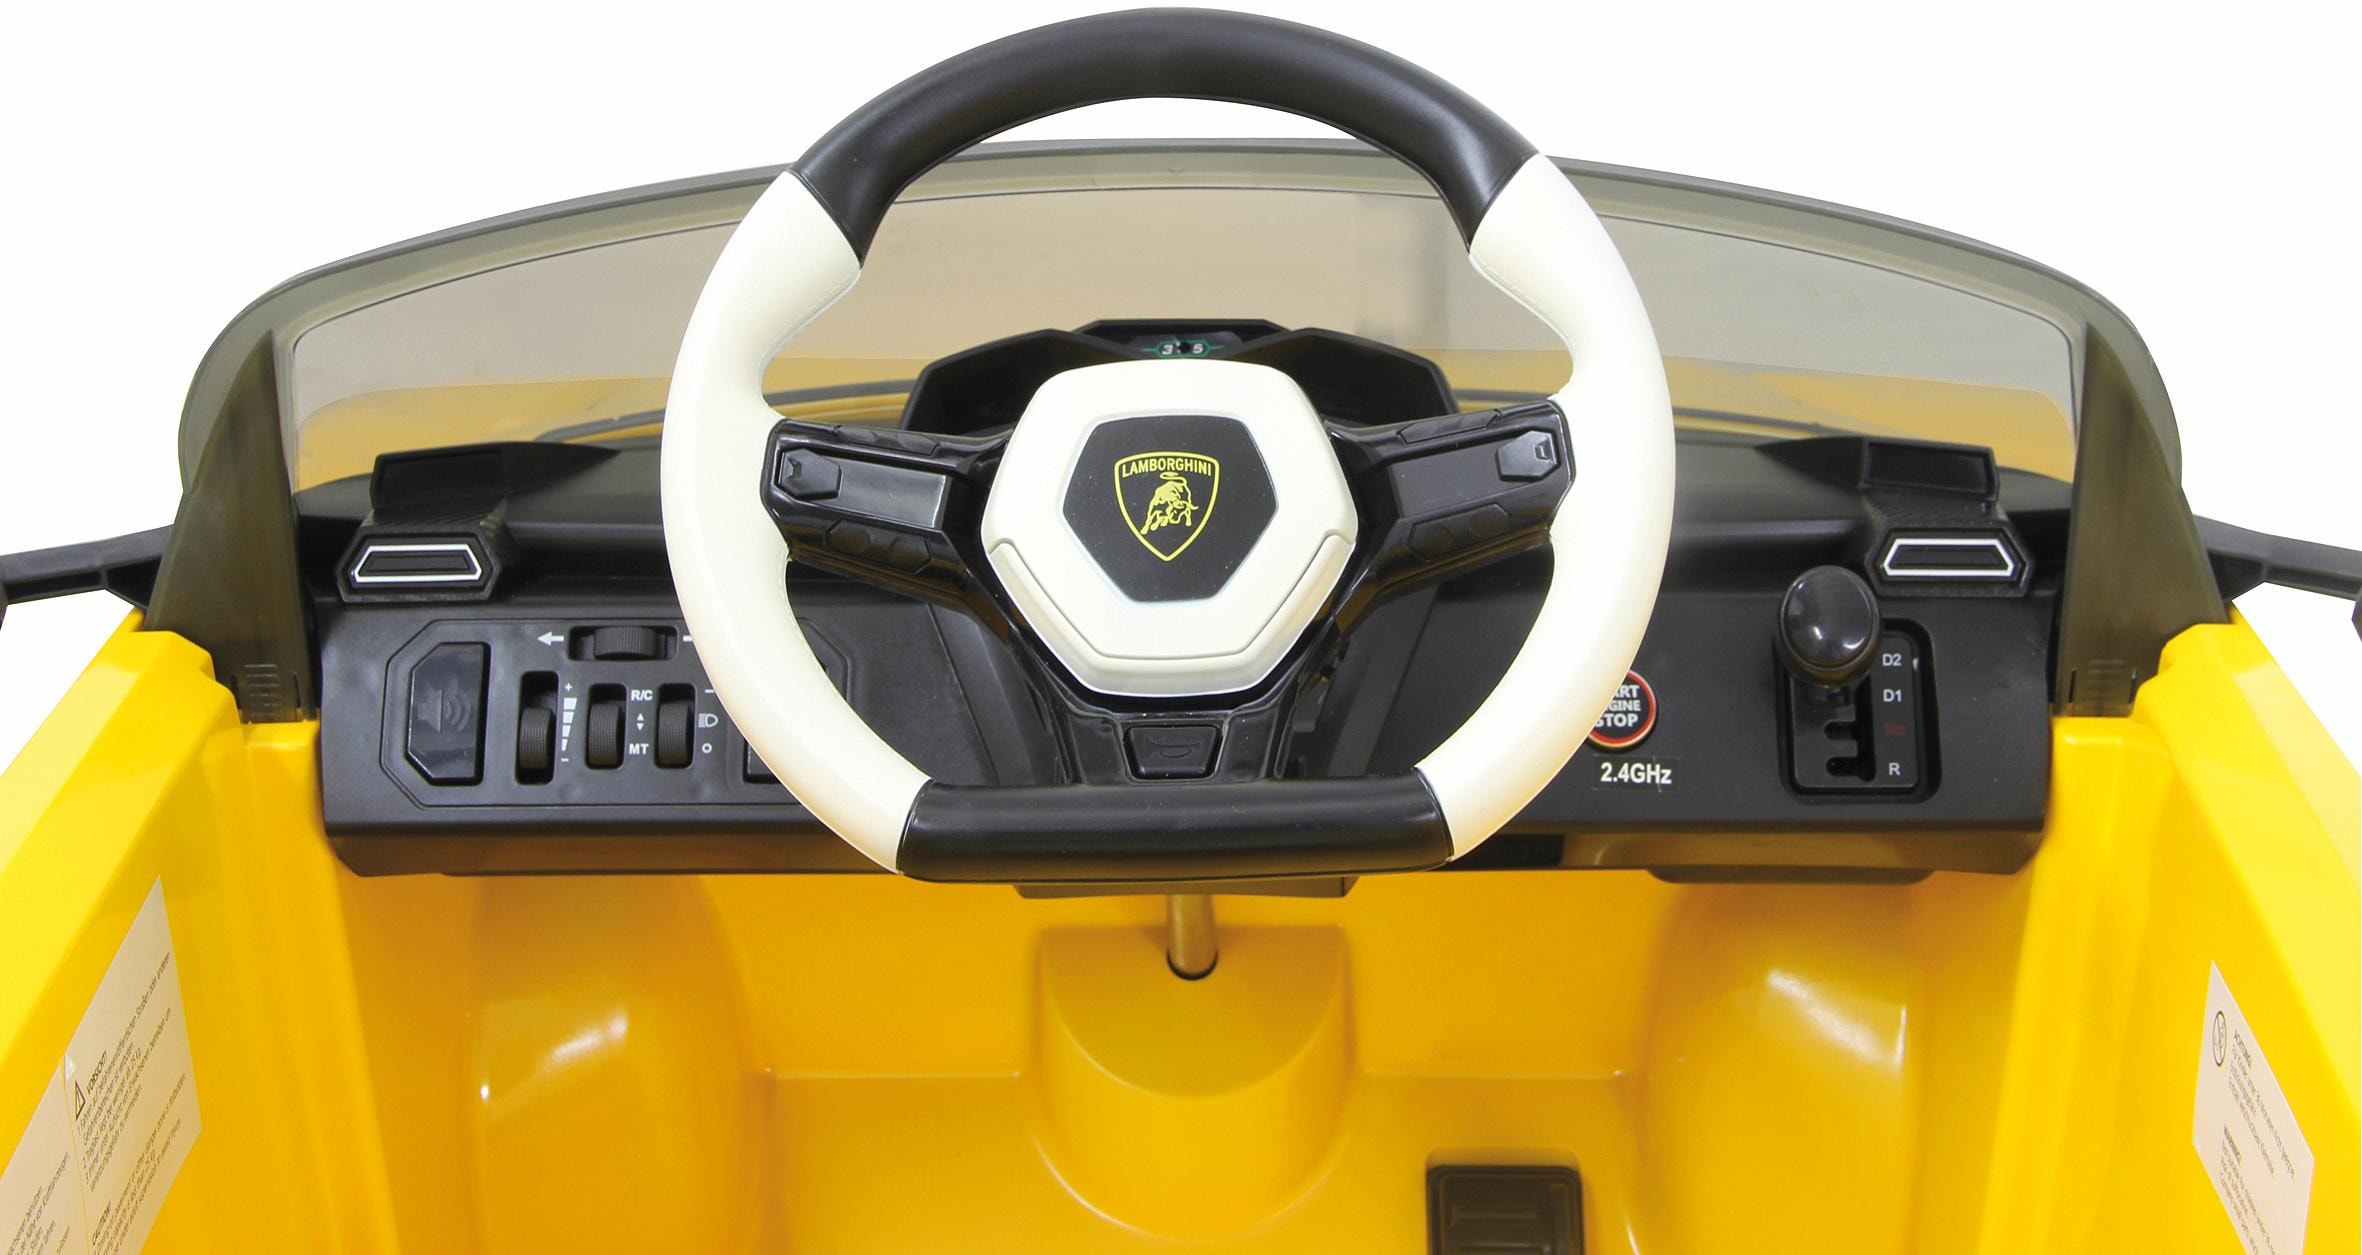 Jamara Elektro-Kinderauto »JAMARA KIDS Ride On Lamborghini Urus gelb 6V«, ab 3 Jahren, bis 30 kg, mit Fernsteuerung